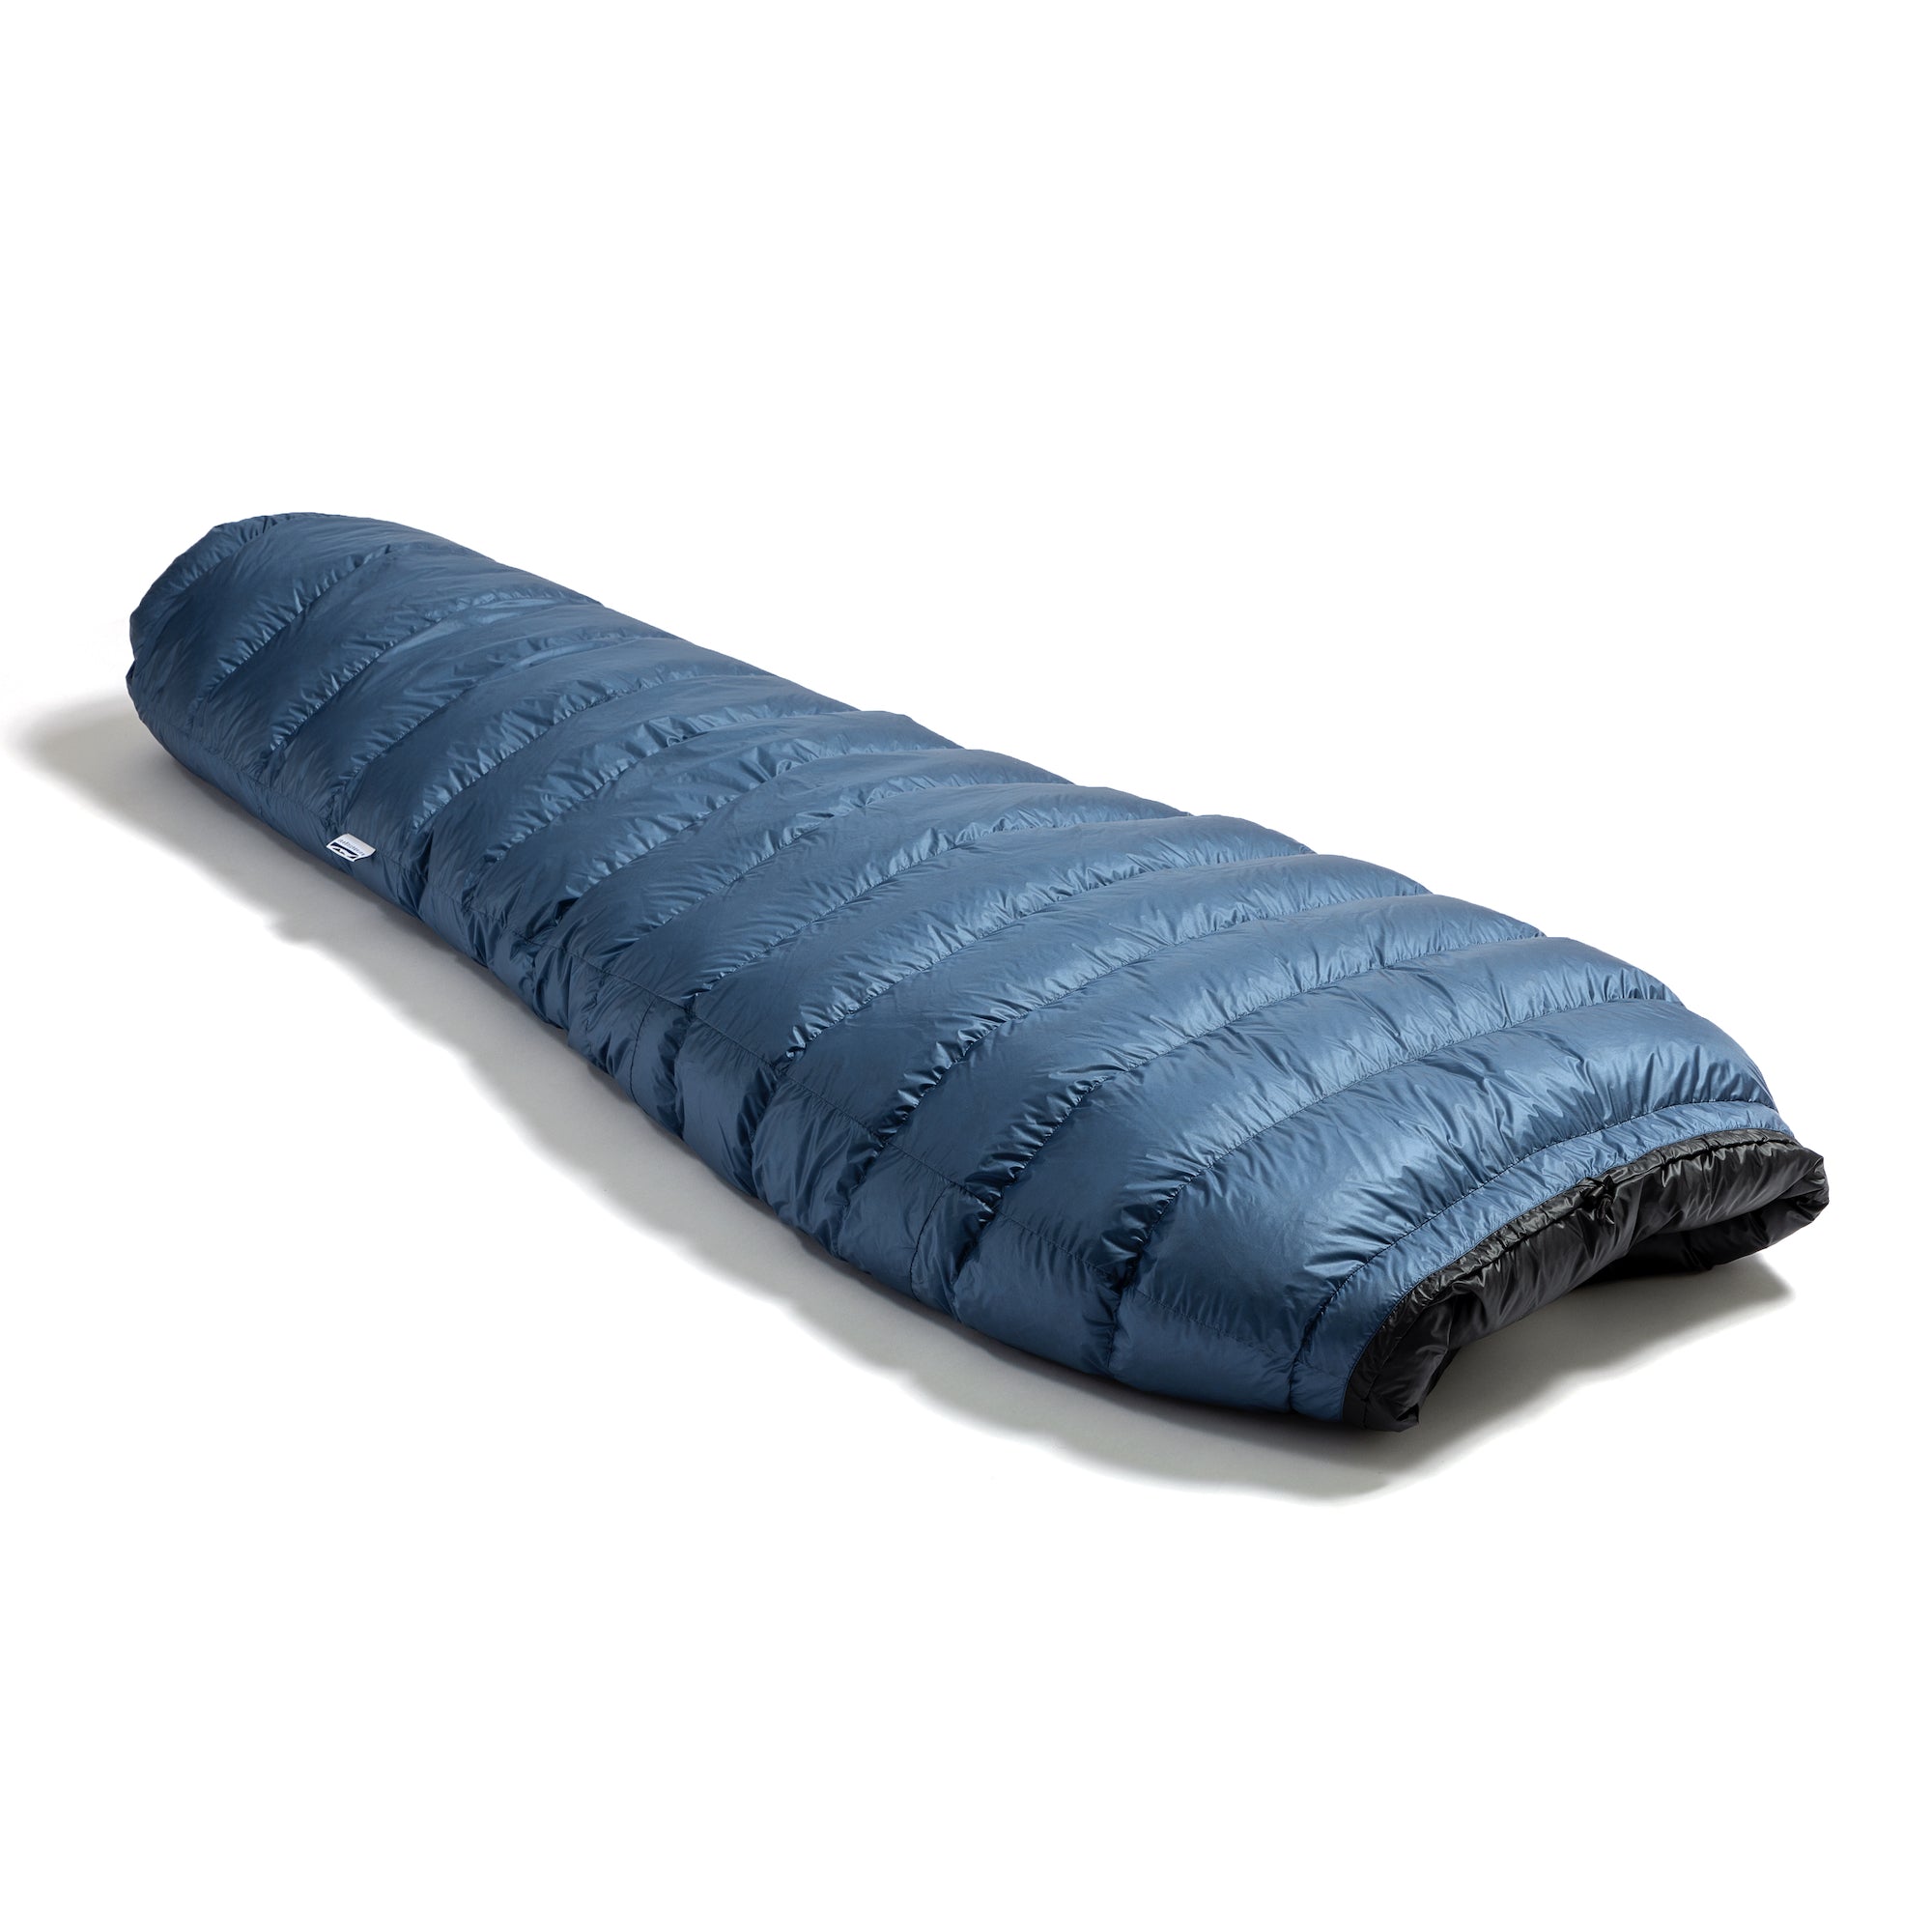 Katabatic Gear Flex 15 Degree Lightweight Quilt Sleeping Bag